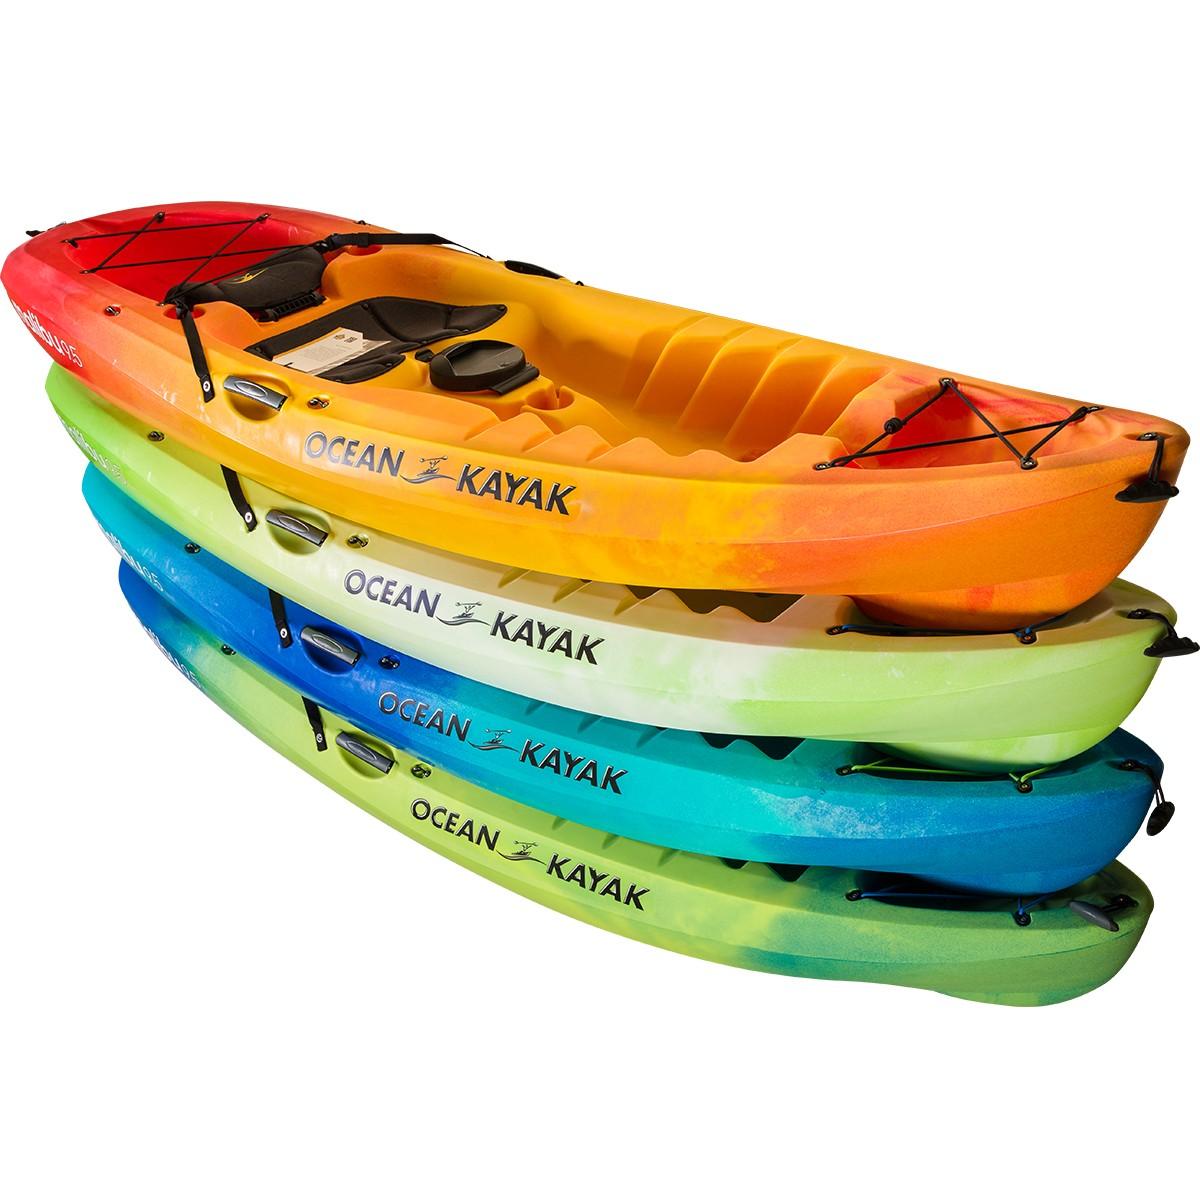 2020 New Malibu 9.5 Ocean Kayak Boat Inventory